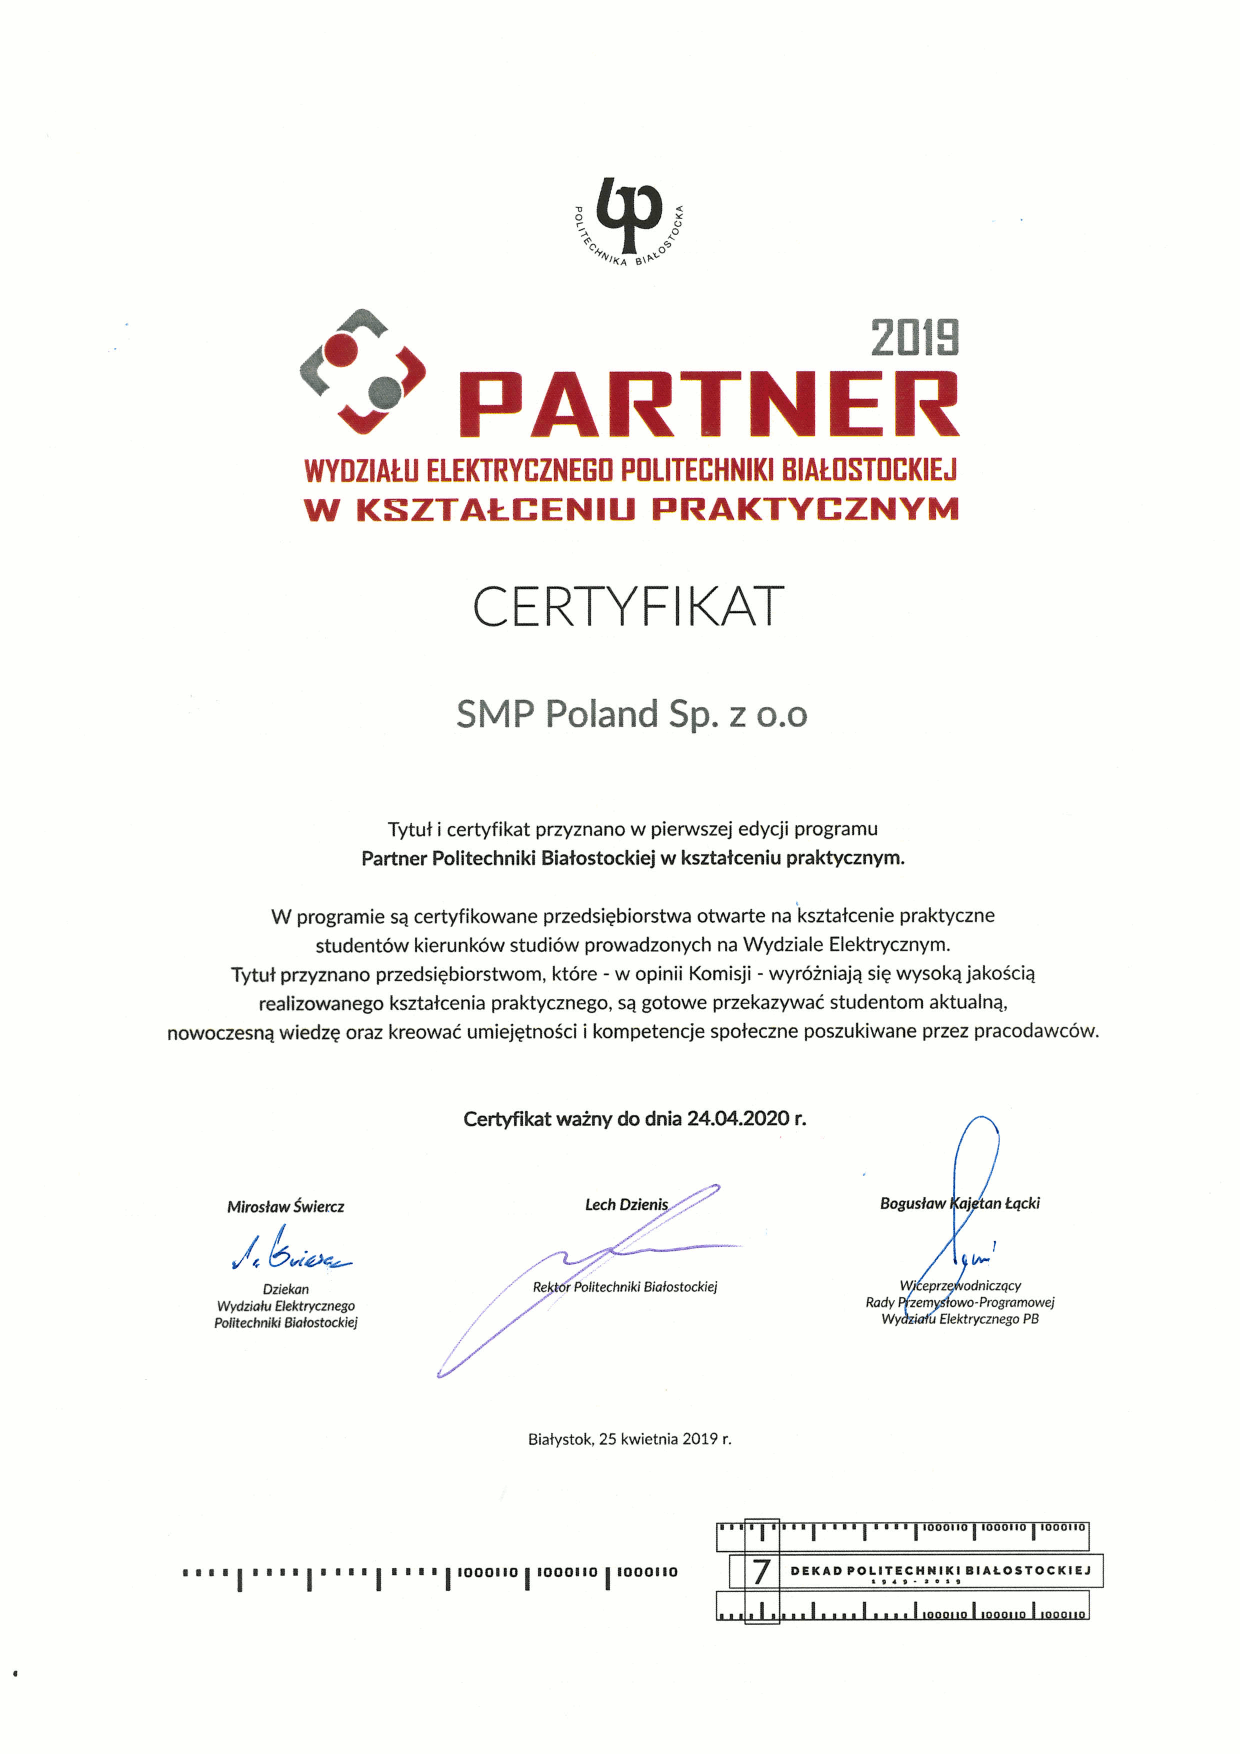 Certyfikat Partnera w kształceniu praktycznym - SMP Poland Sp. z o.o.